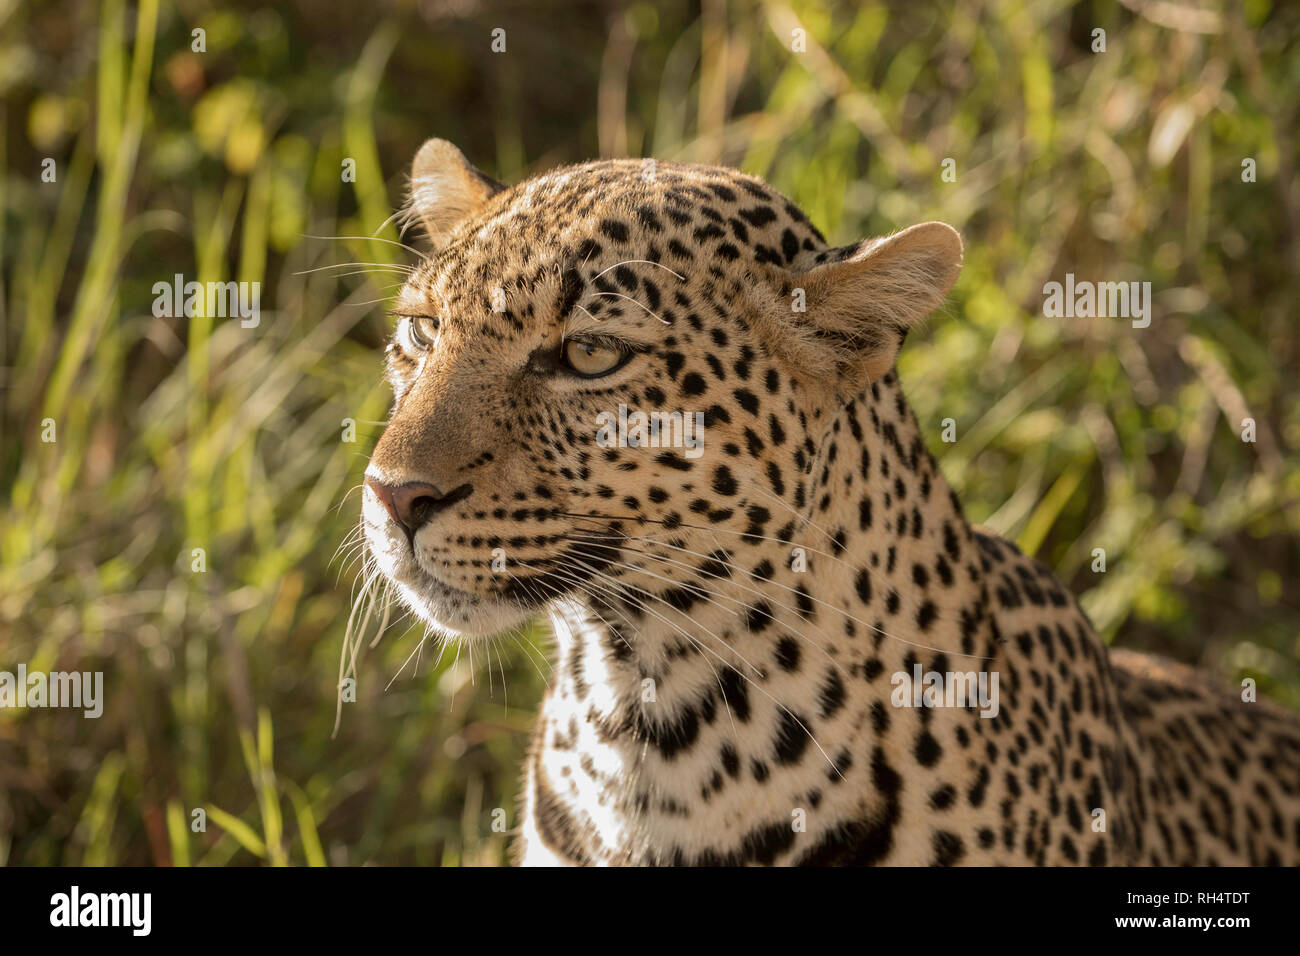 Close up of leopard face Banque D'Images